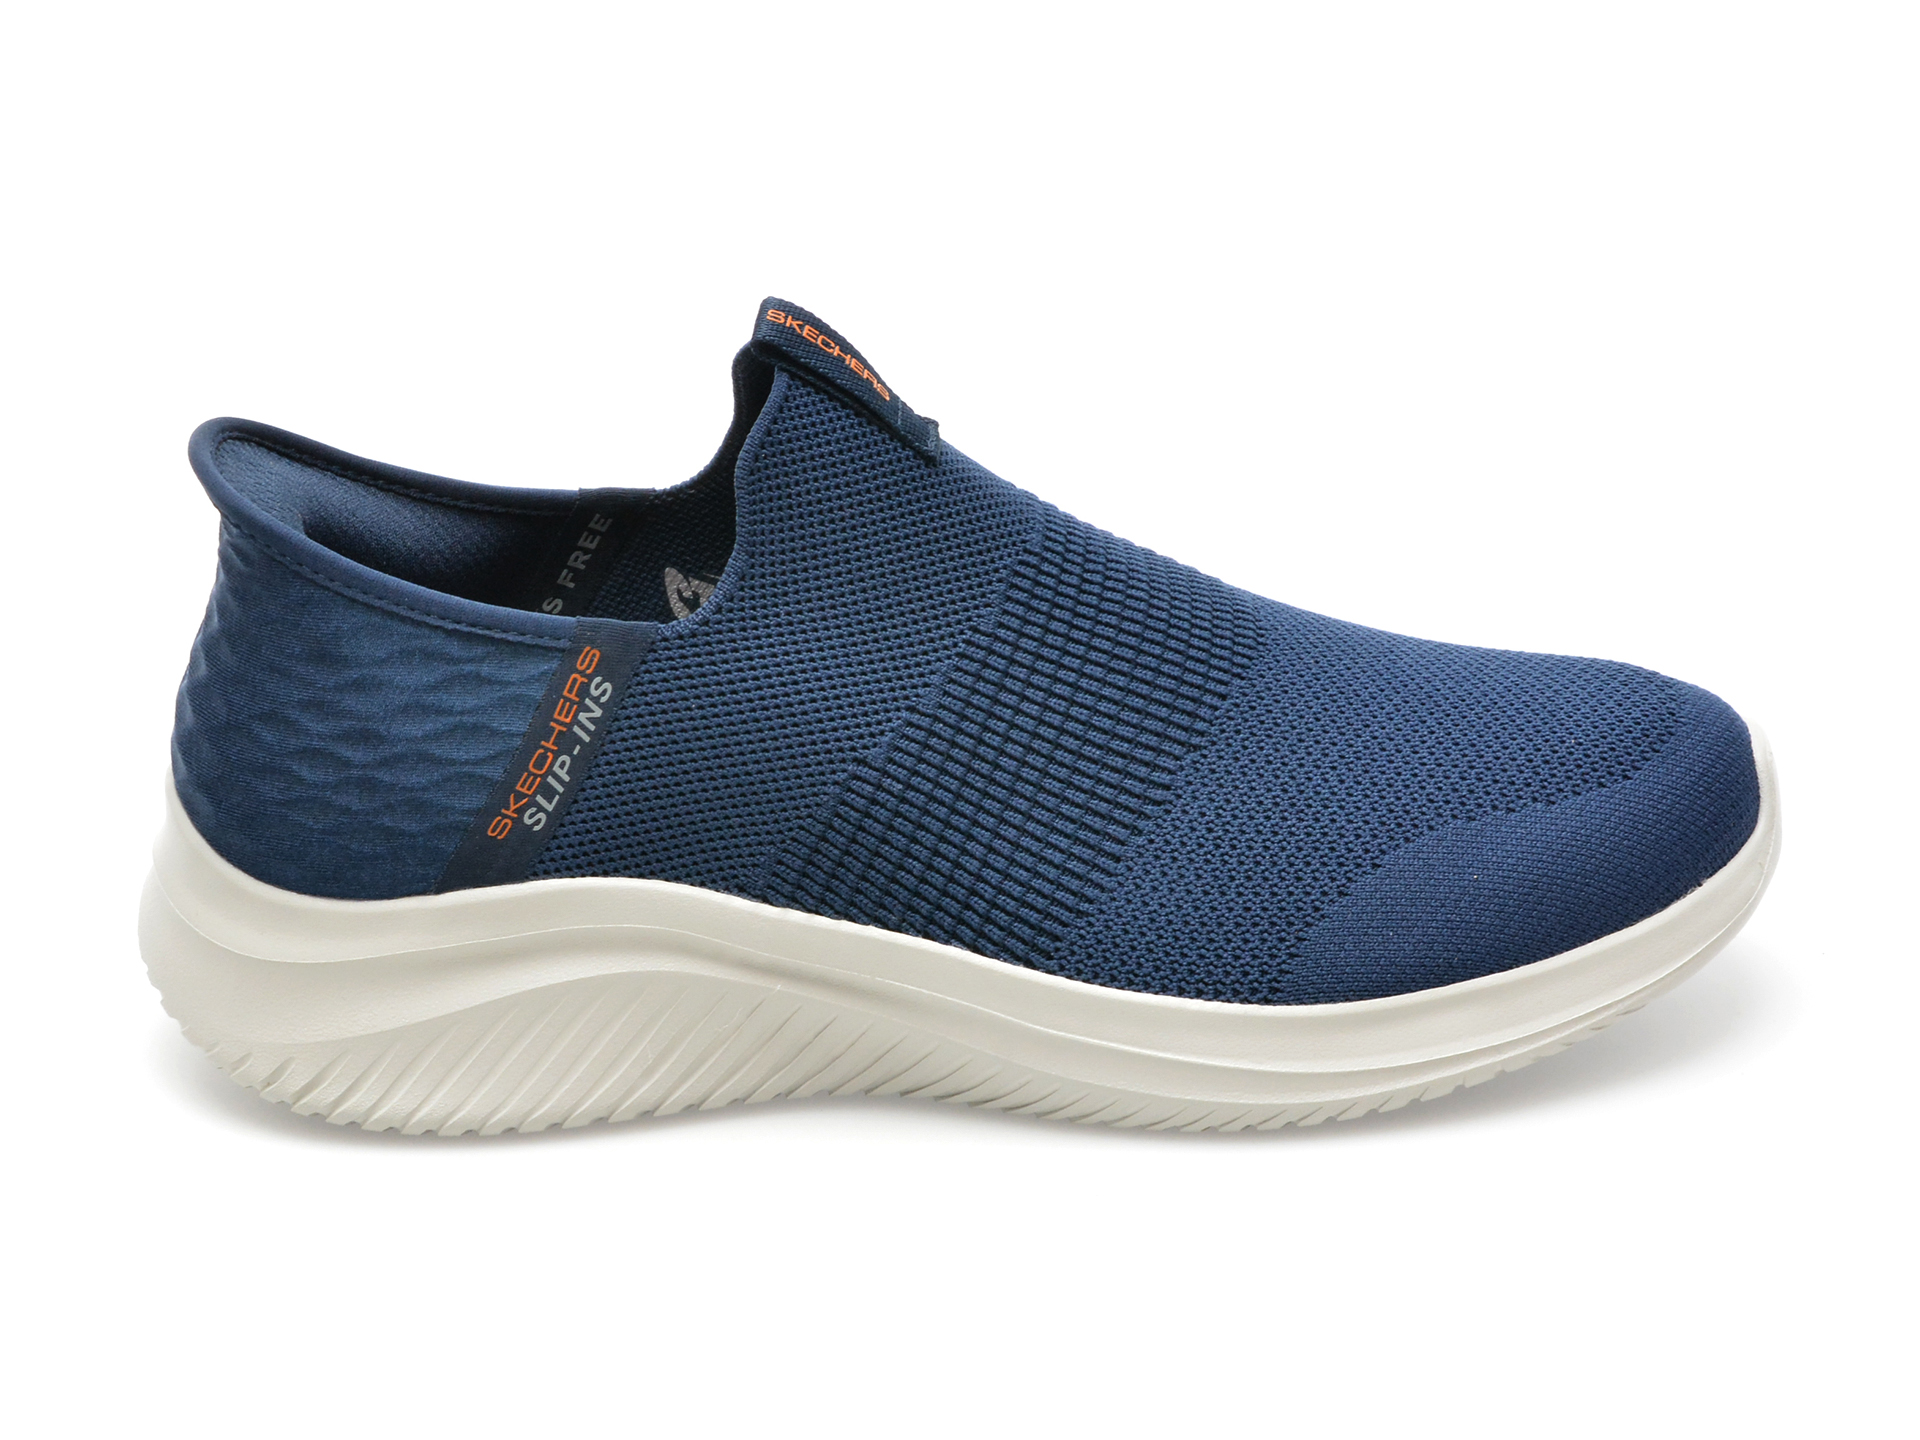 Pantofi sport SKECHERS bleumarin, ULTRA FLEX 3.0, din material textil